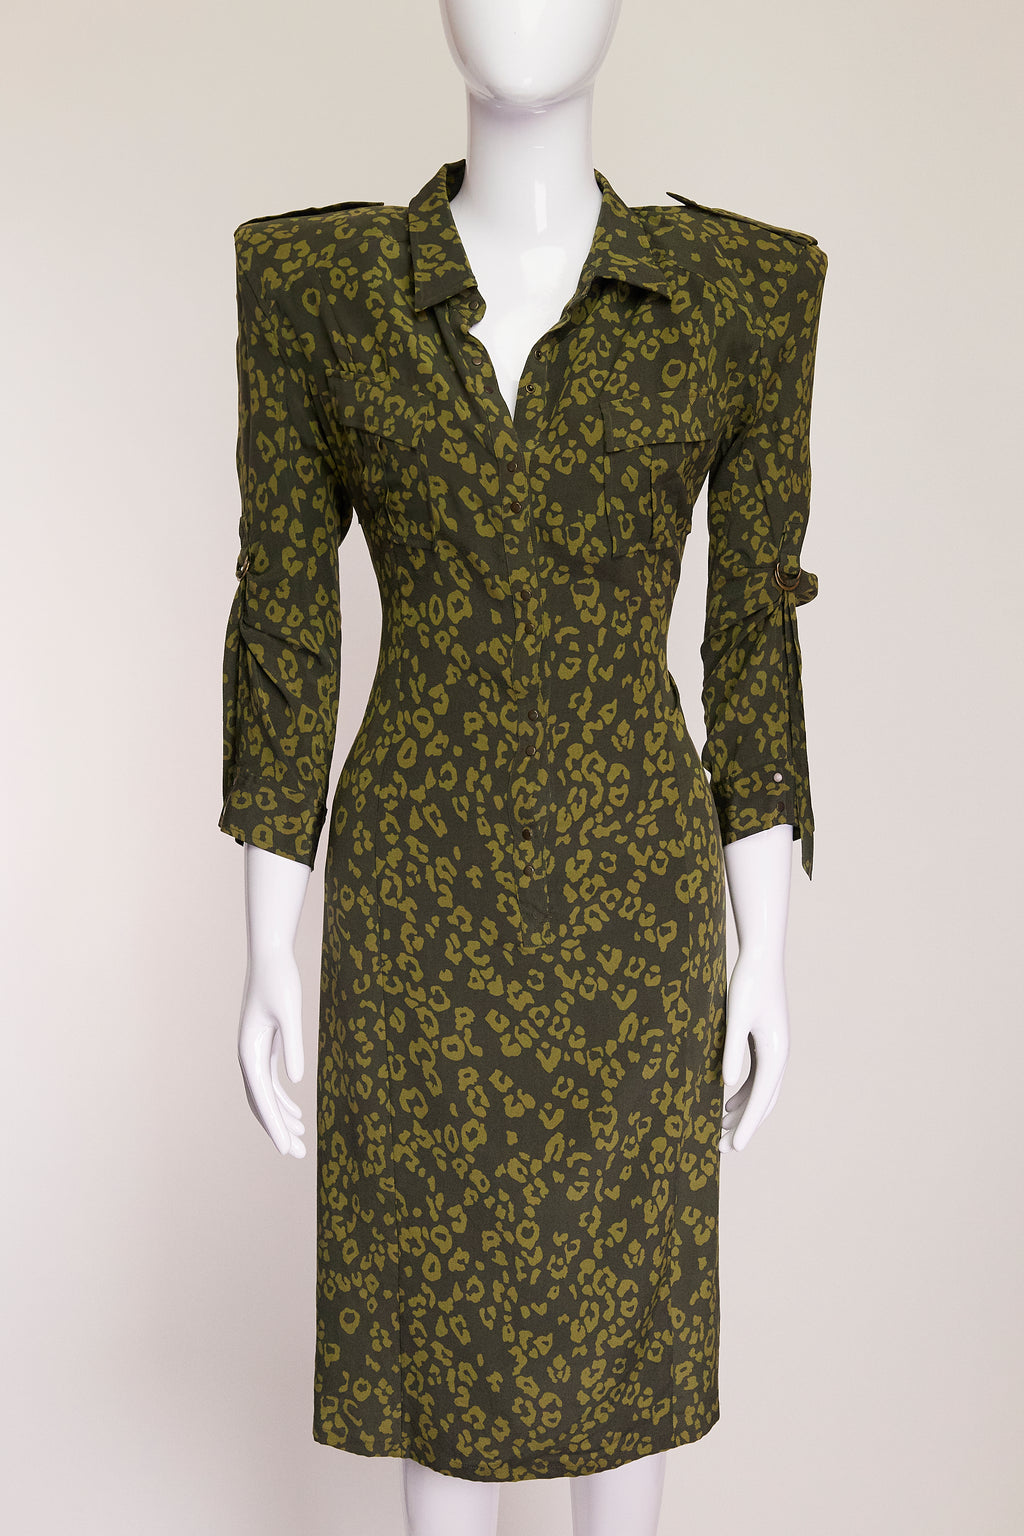 Balenciaga Paris Shoulder Pad Green Leopard Print Dress FR42 IT46